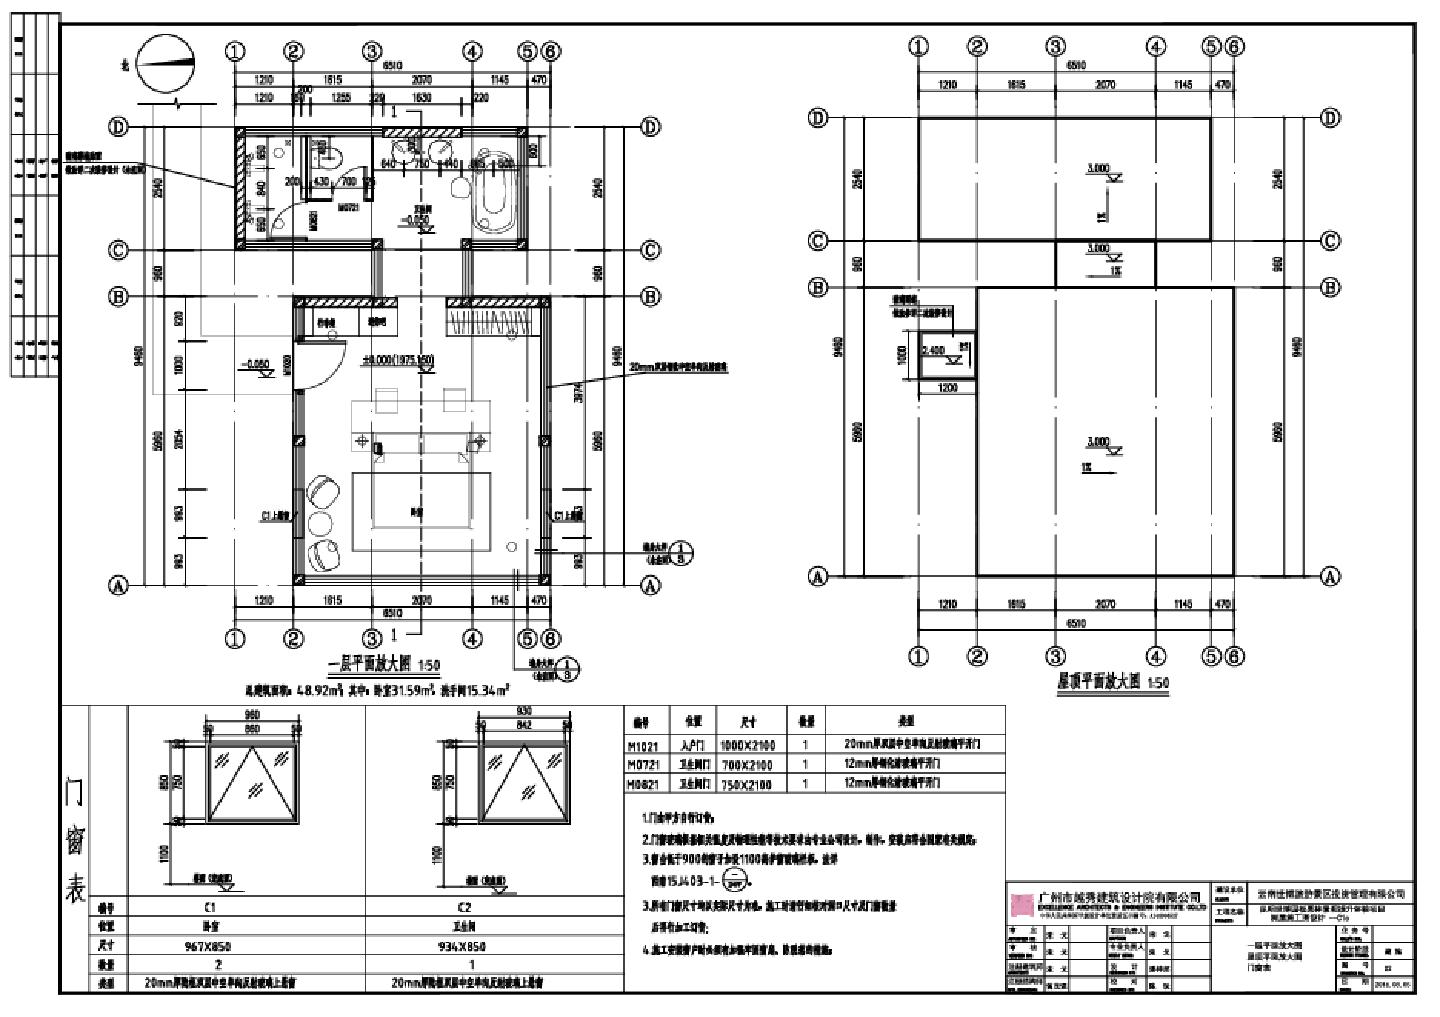 昆明世博园板栗林景观提升体验项目树屋施工图设计-C1c建筑CAD图.dwg